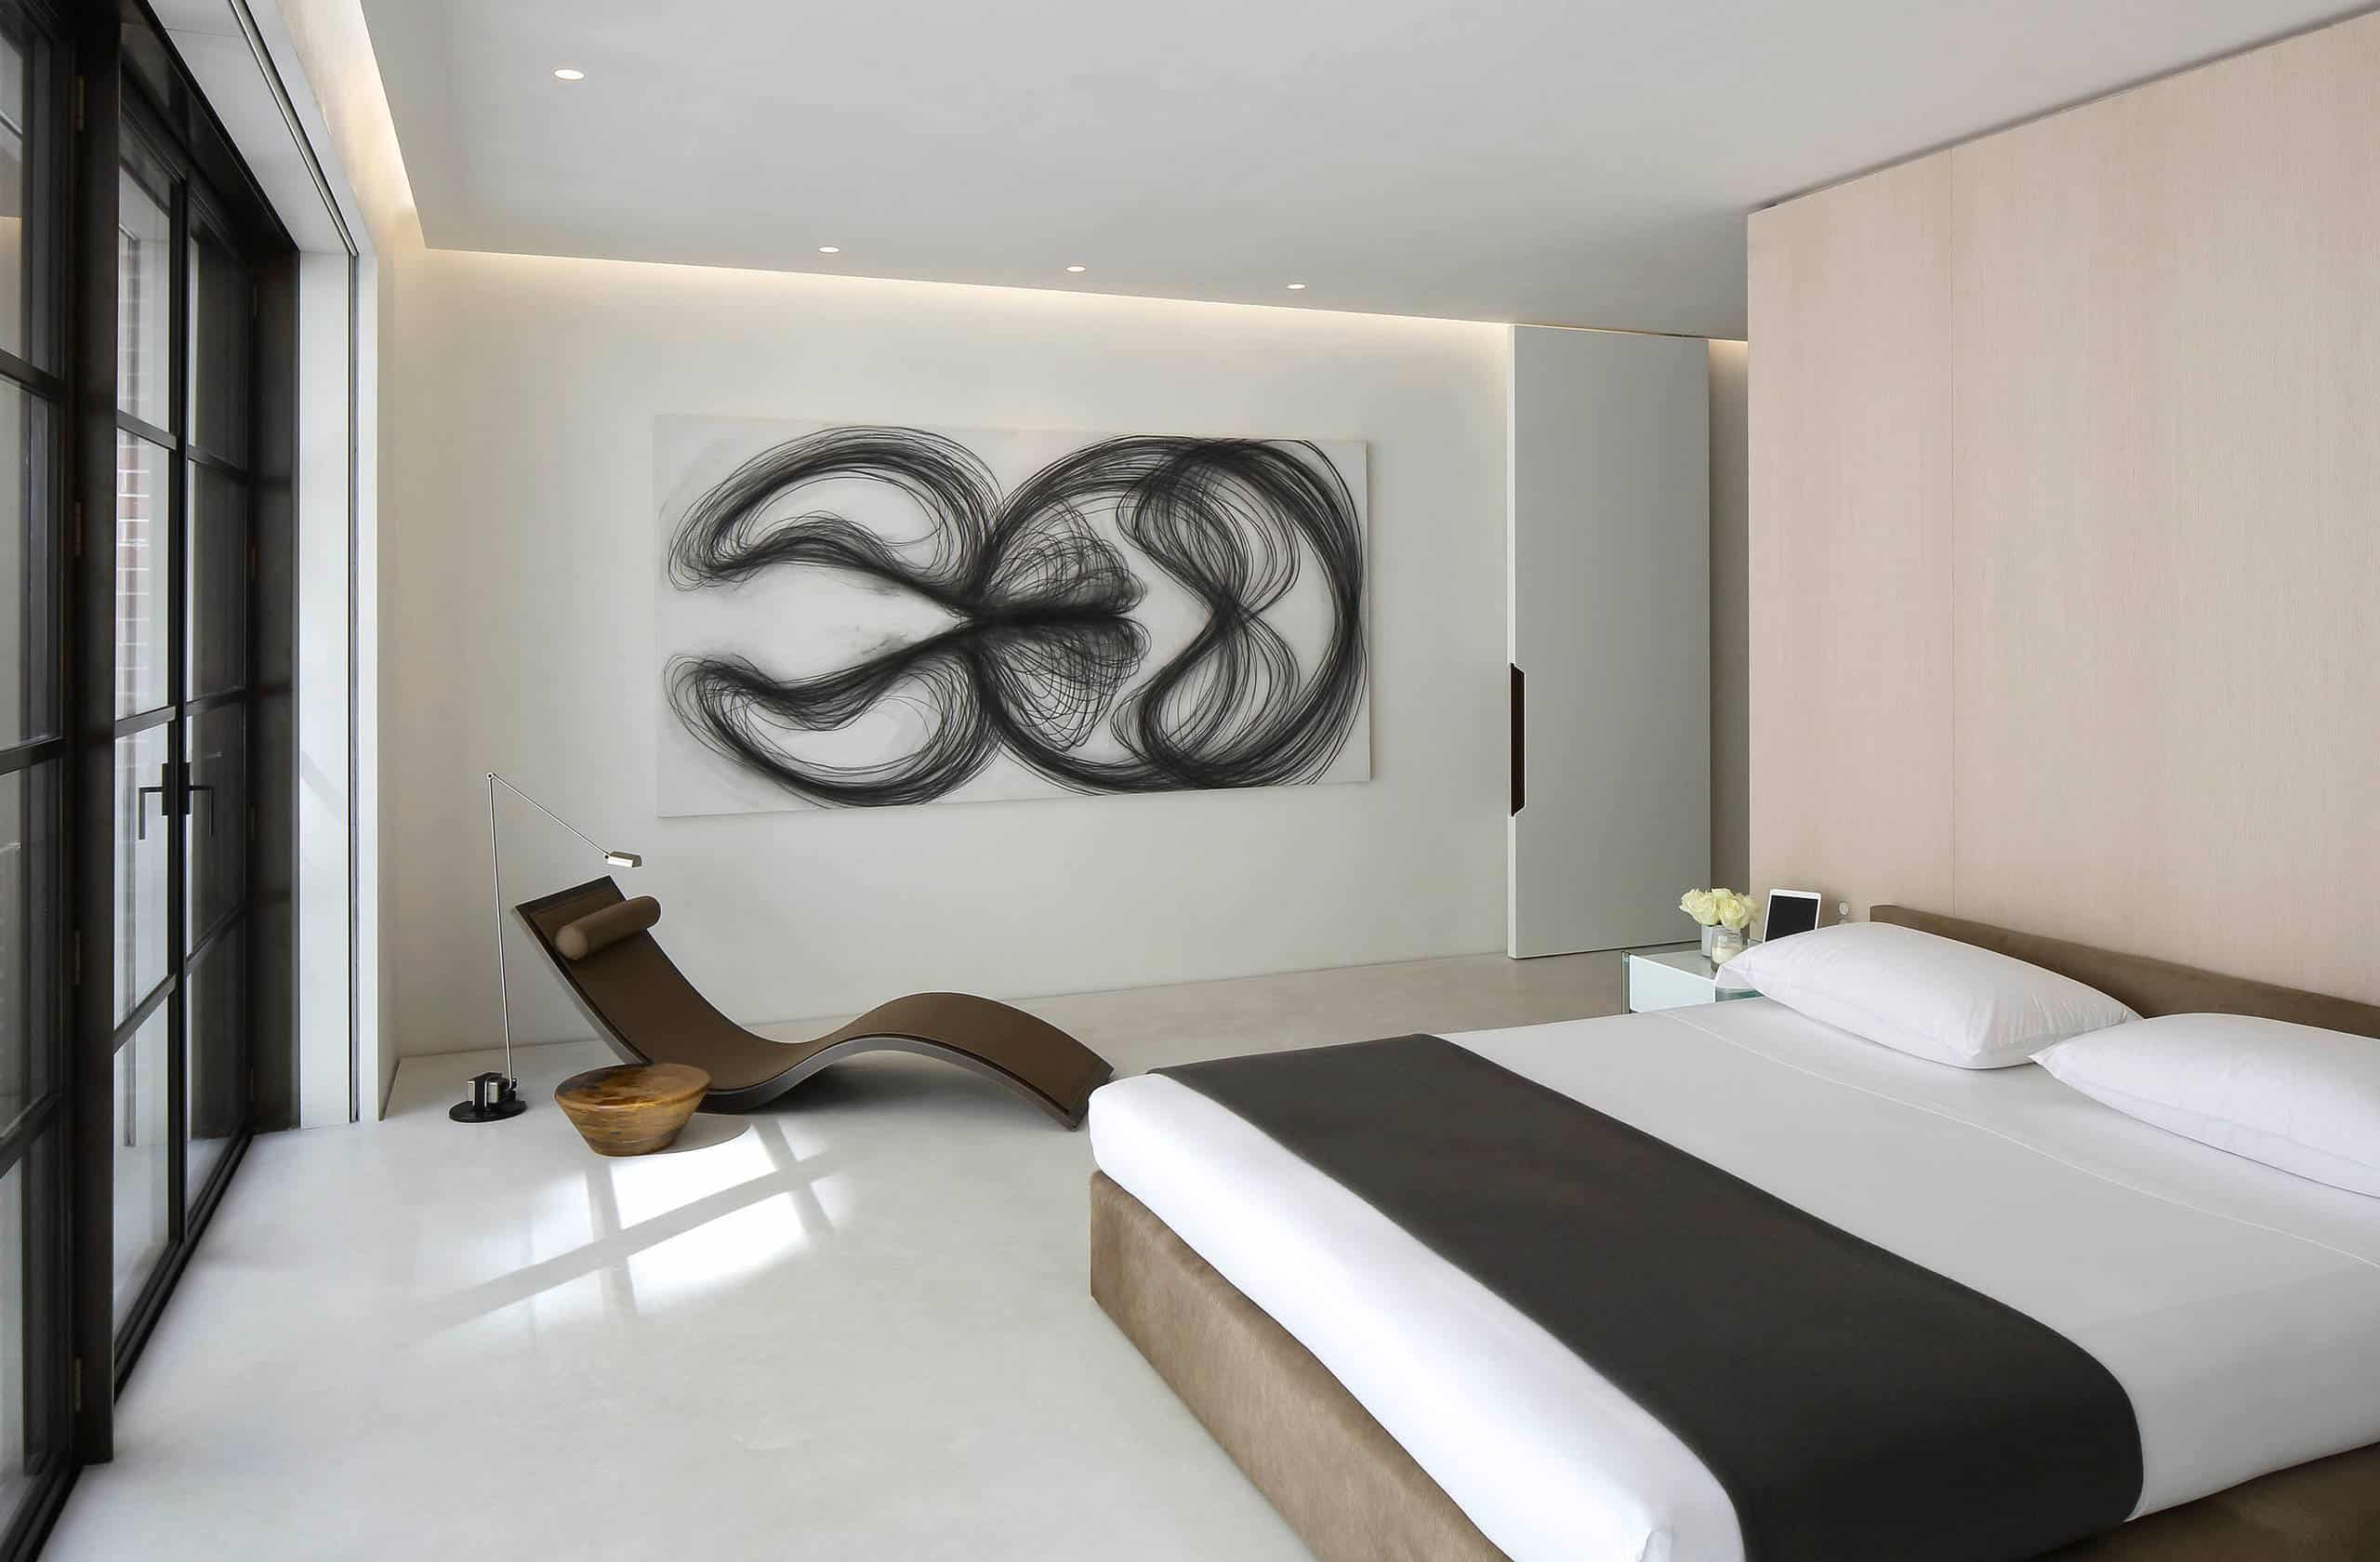 Desain Interior Kamar Tidur Simple Dengan Lukisan Sederhana - Thegorbalsla